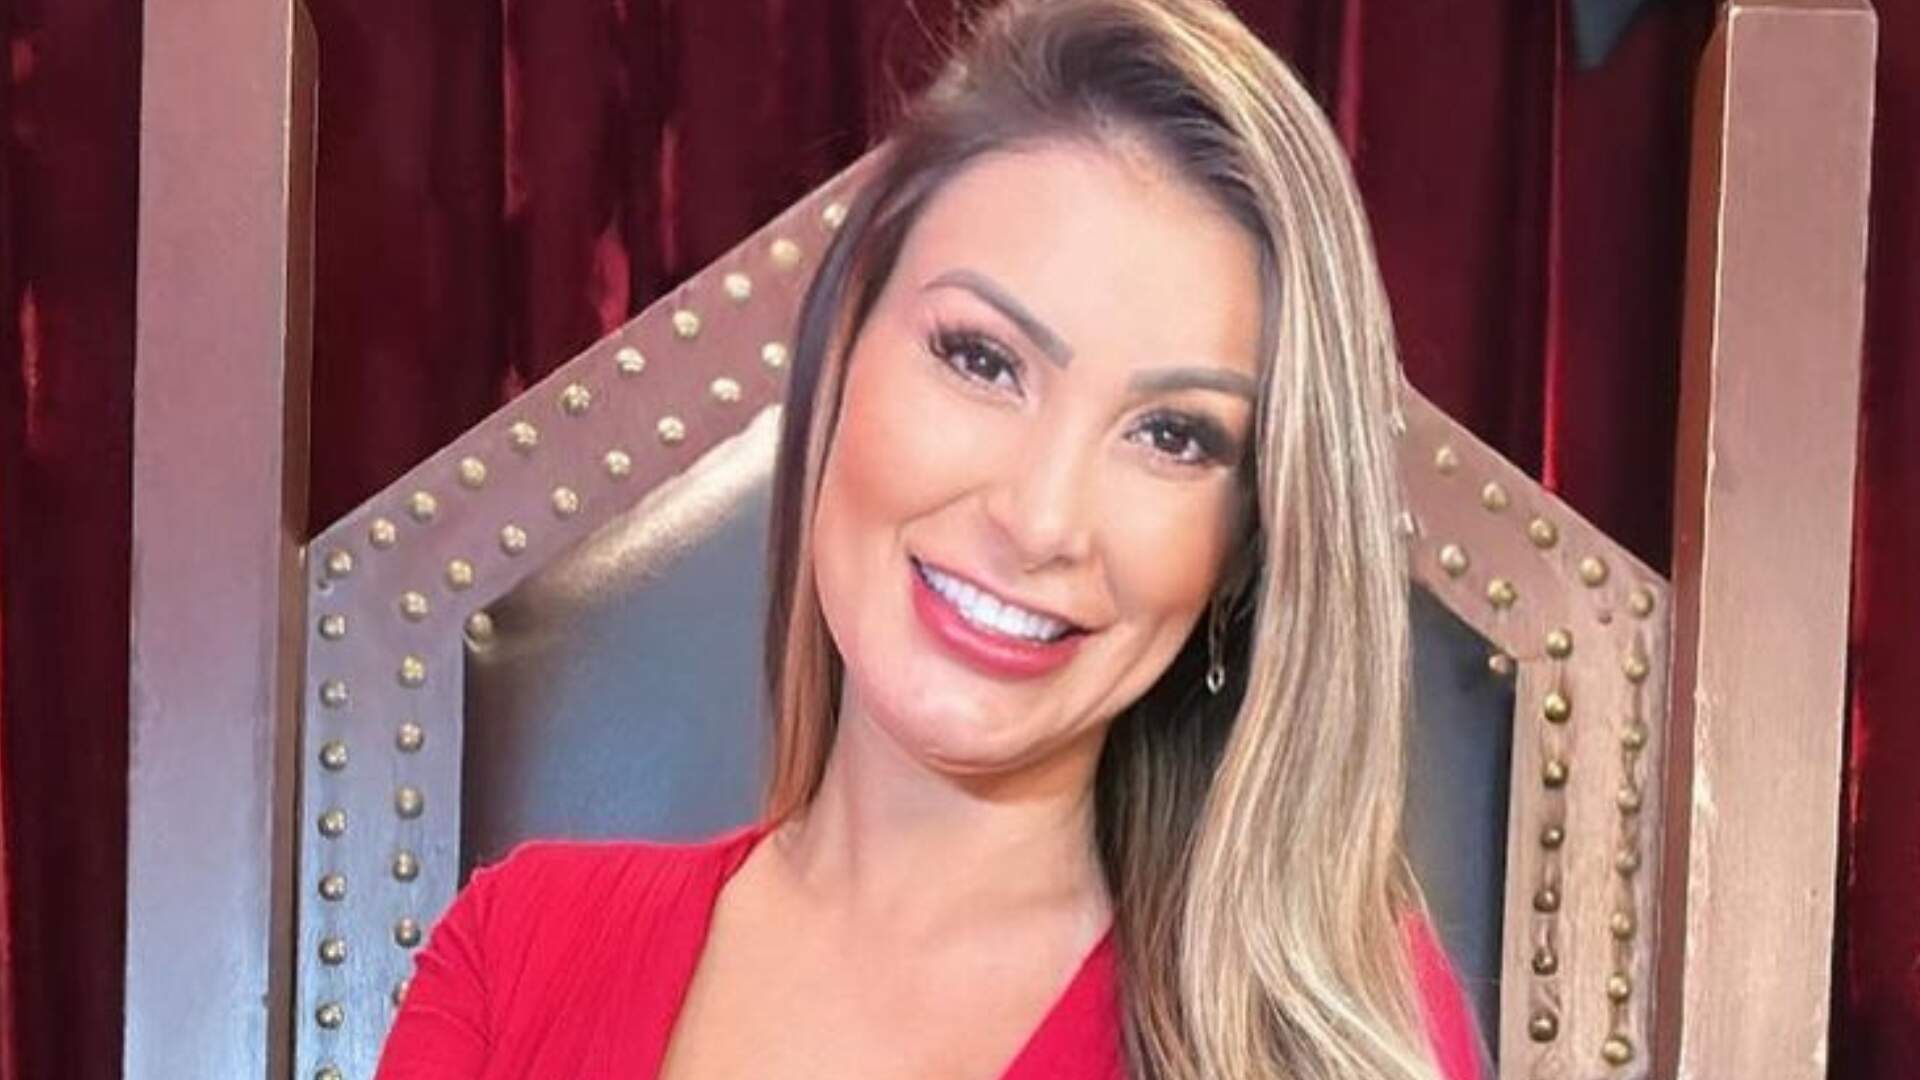 Pela primeira vez, Andressa Urach exibe cintura após remover as costelas: “Perfeita” - Metropolitana FM